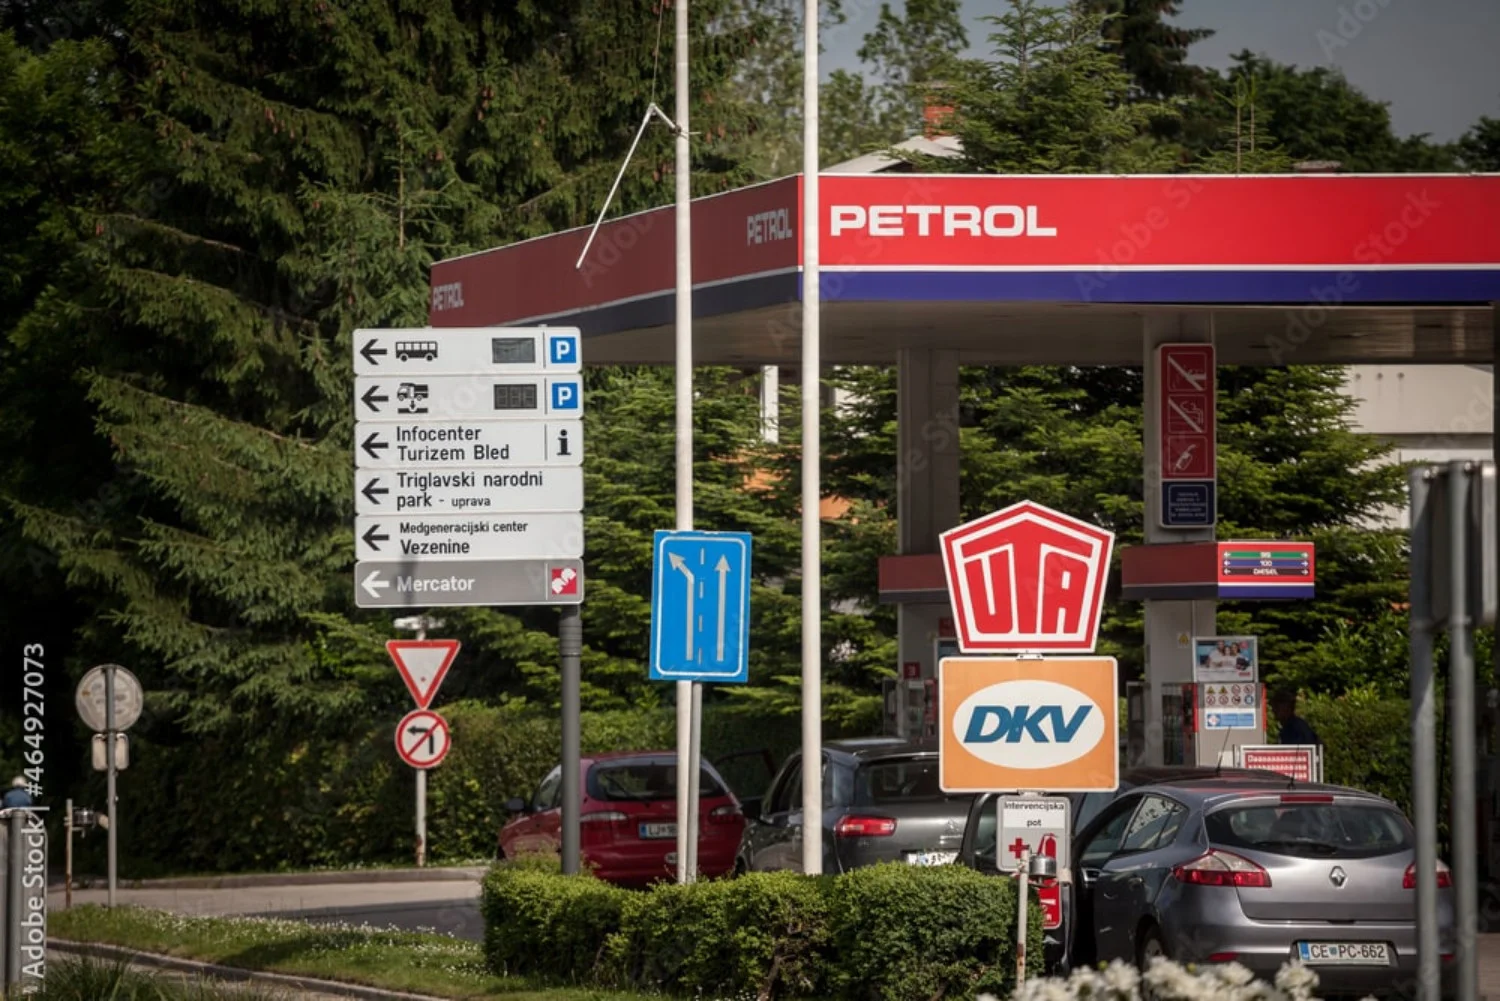 Marca de top în Slovenia, Petrol este considerată o marcă de încredere.